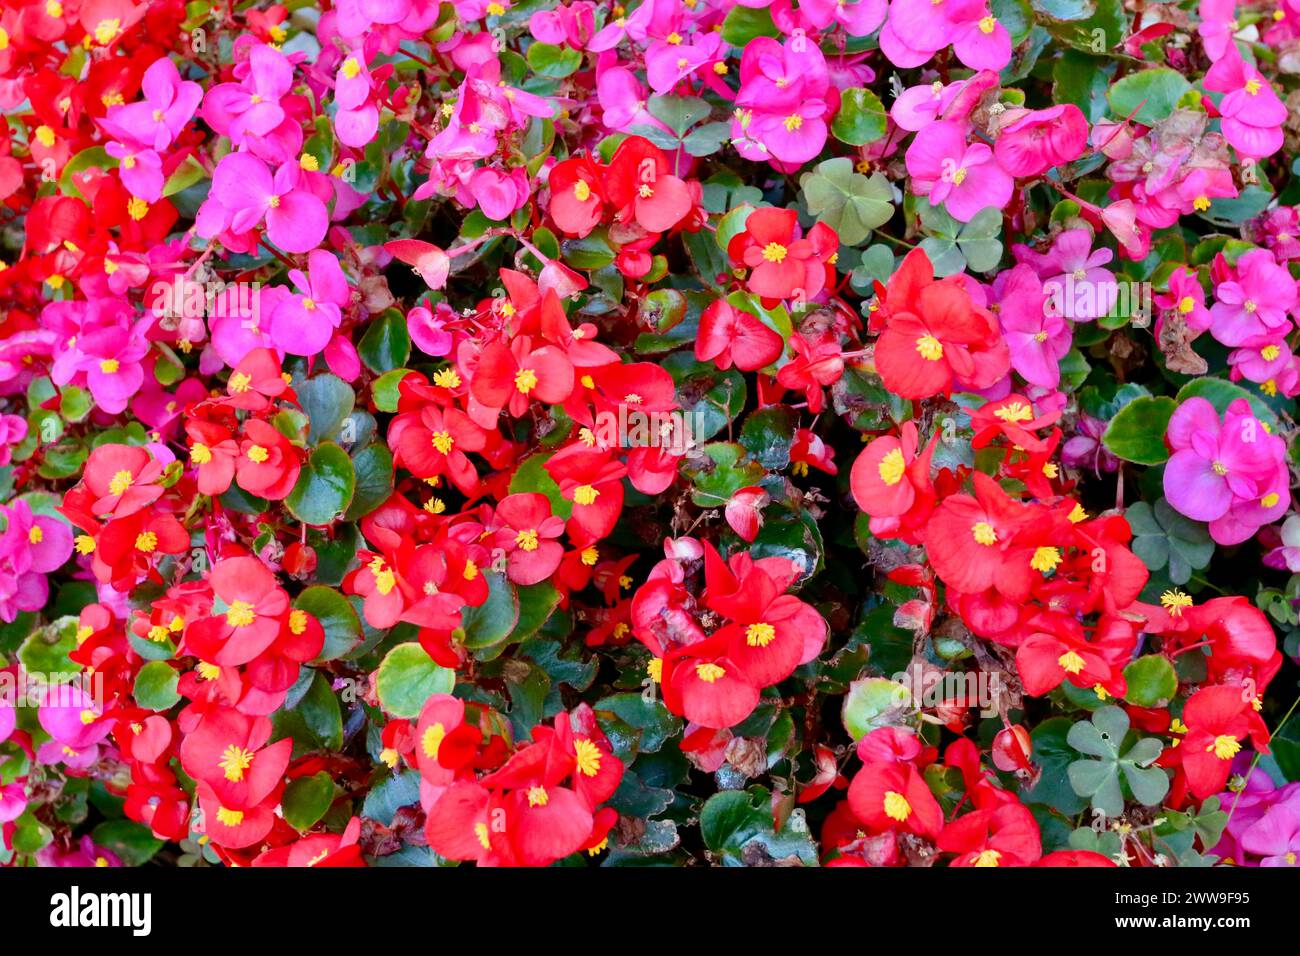 Colourful flowers, Piber, Styria, Austria. Stock Photo